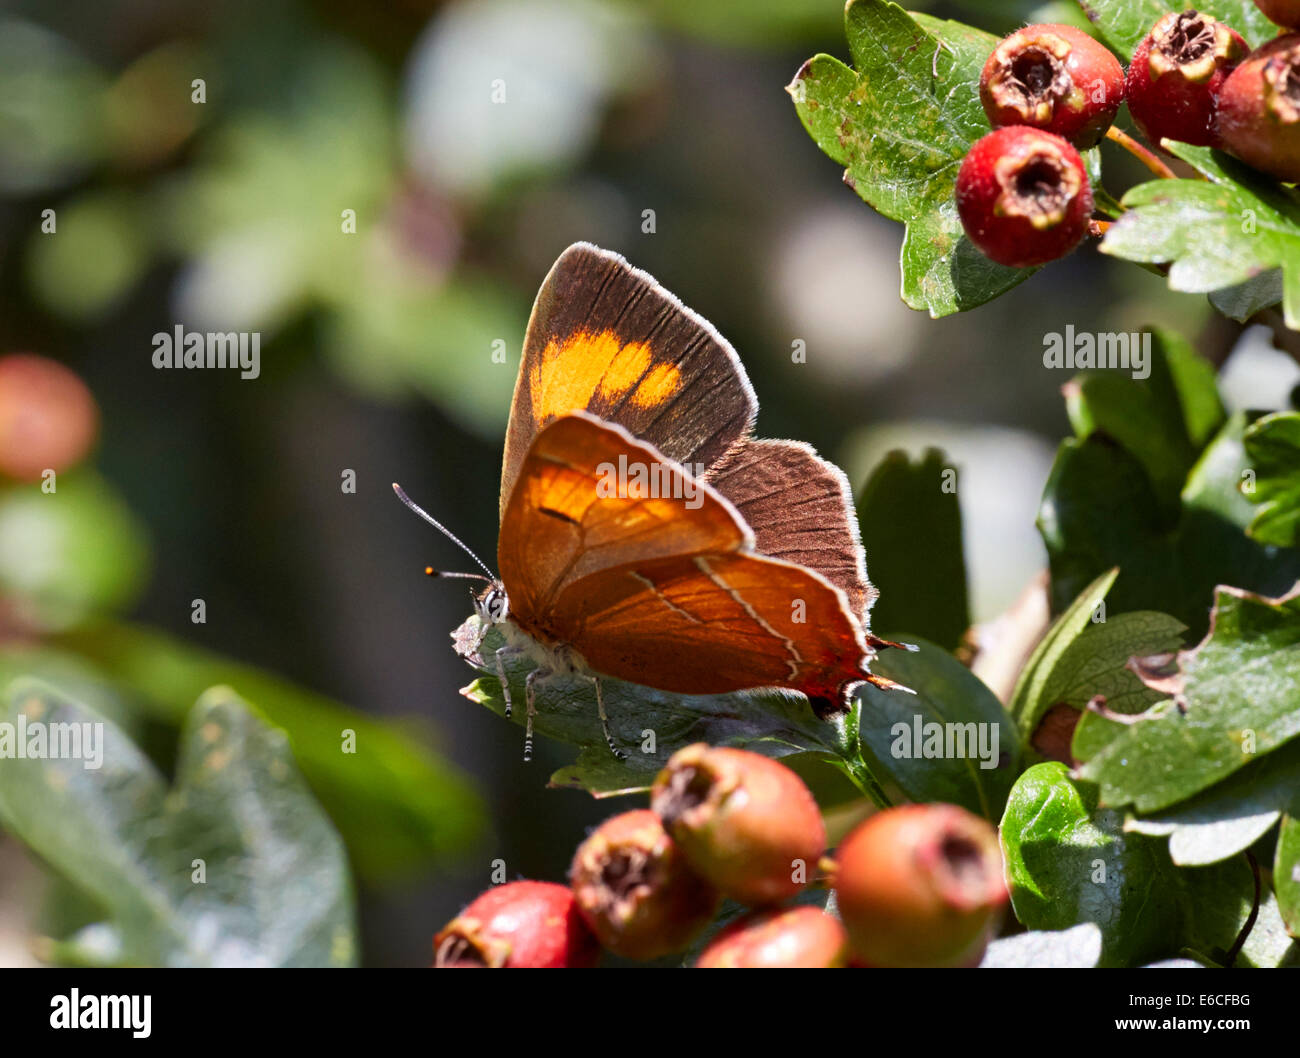 Brown Hairstreak butterfly a poggiare sulla foglia di biancospino. Bookham comune, Surrey, Inghilterra. Foto Stock